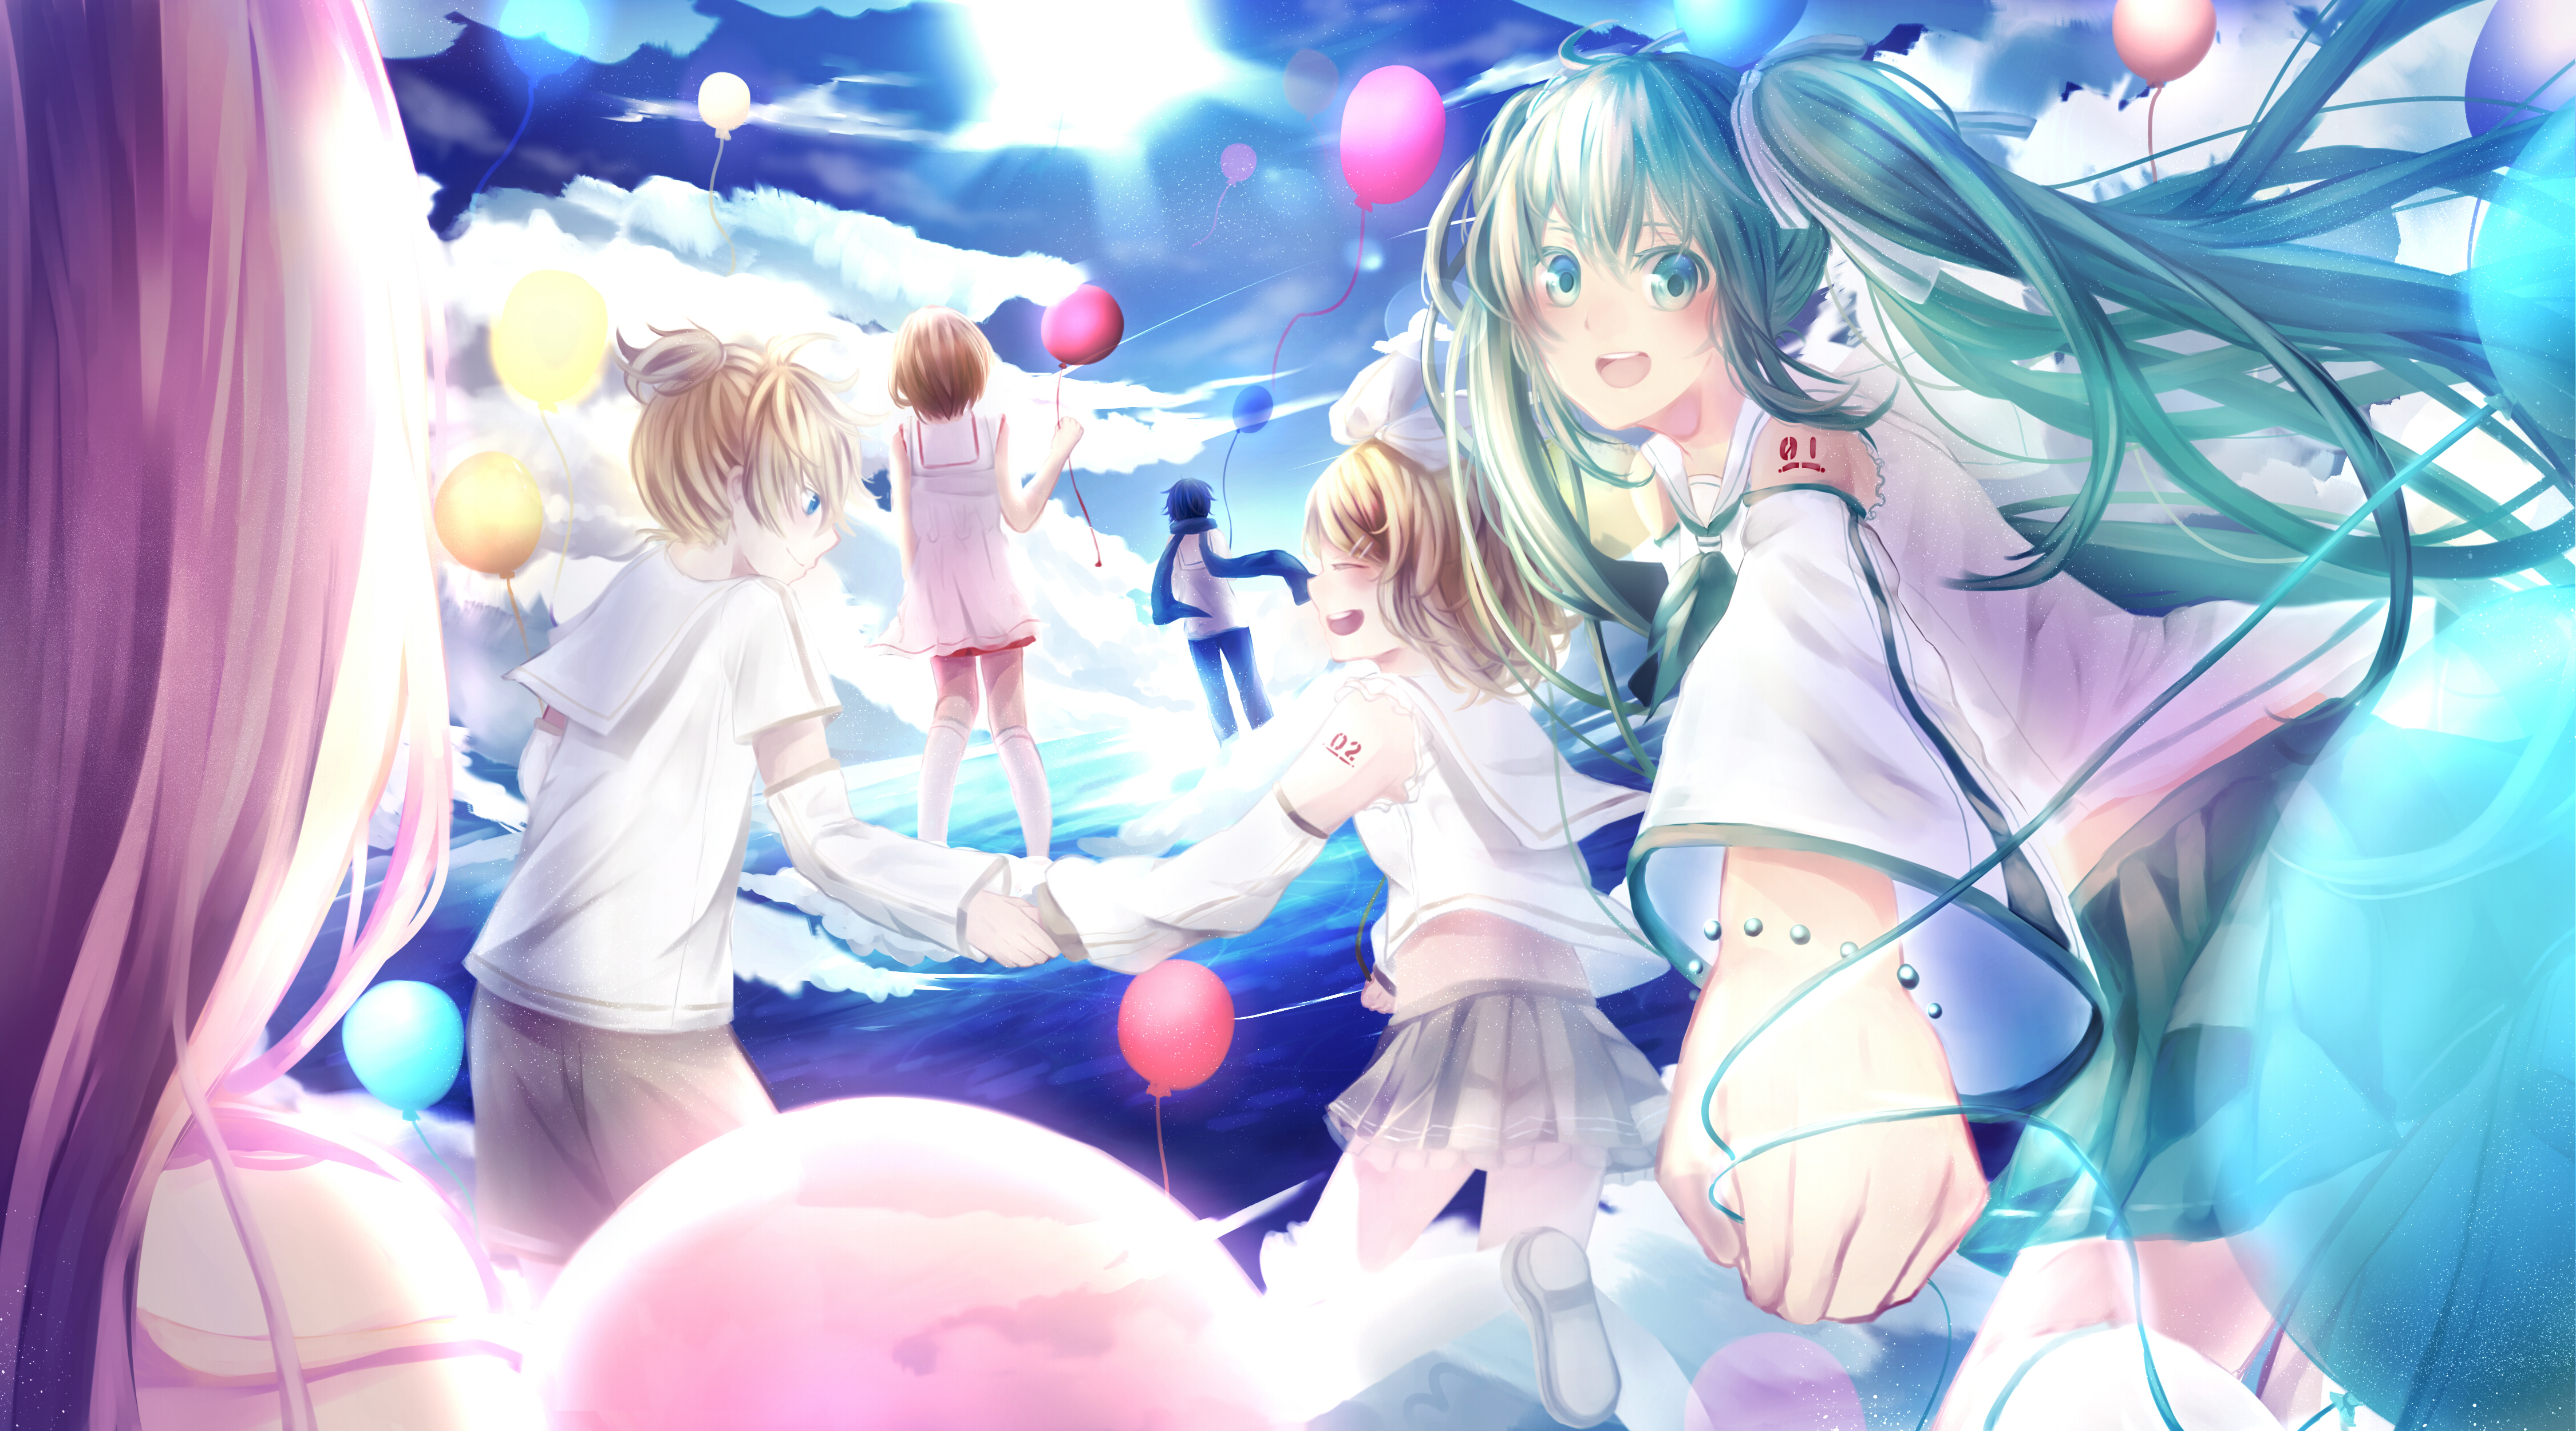 Descarga gratuita de fondo de pantalla para móvil de Vocaloid, Animado, Hatsune Miku, Rin Kagamine, Kaito (Vocaloid), Len Kagamine, Meiko (Vocaloid).